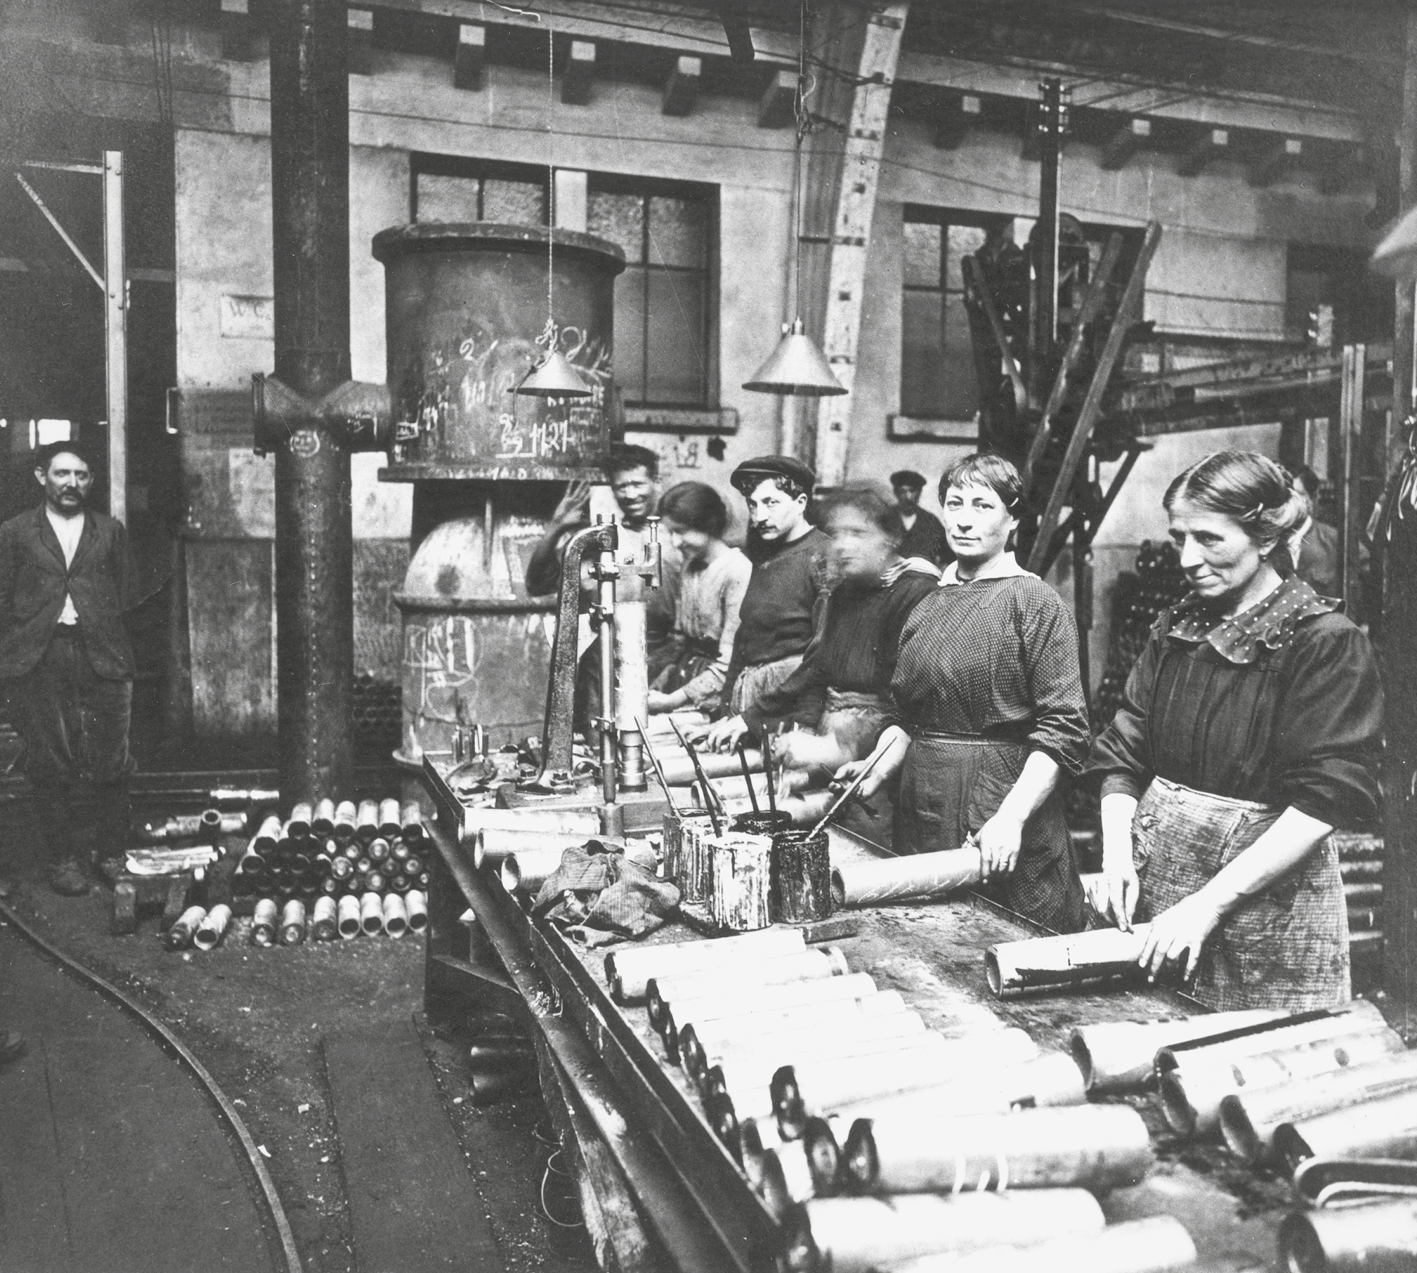 Fotografia em preto e branco. Mulheres em uma linha de produção. Estão em pé atrás de uma longa bancada baixa. Sobre ela diversos tubos. Ao fundo, grandes dutos interligados. Atrás e à esquerda, alguns homens observam.